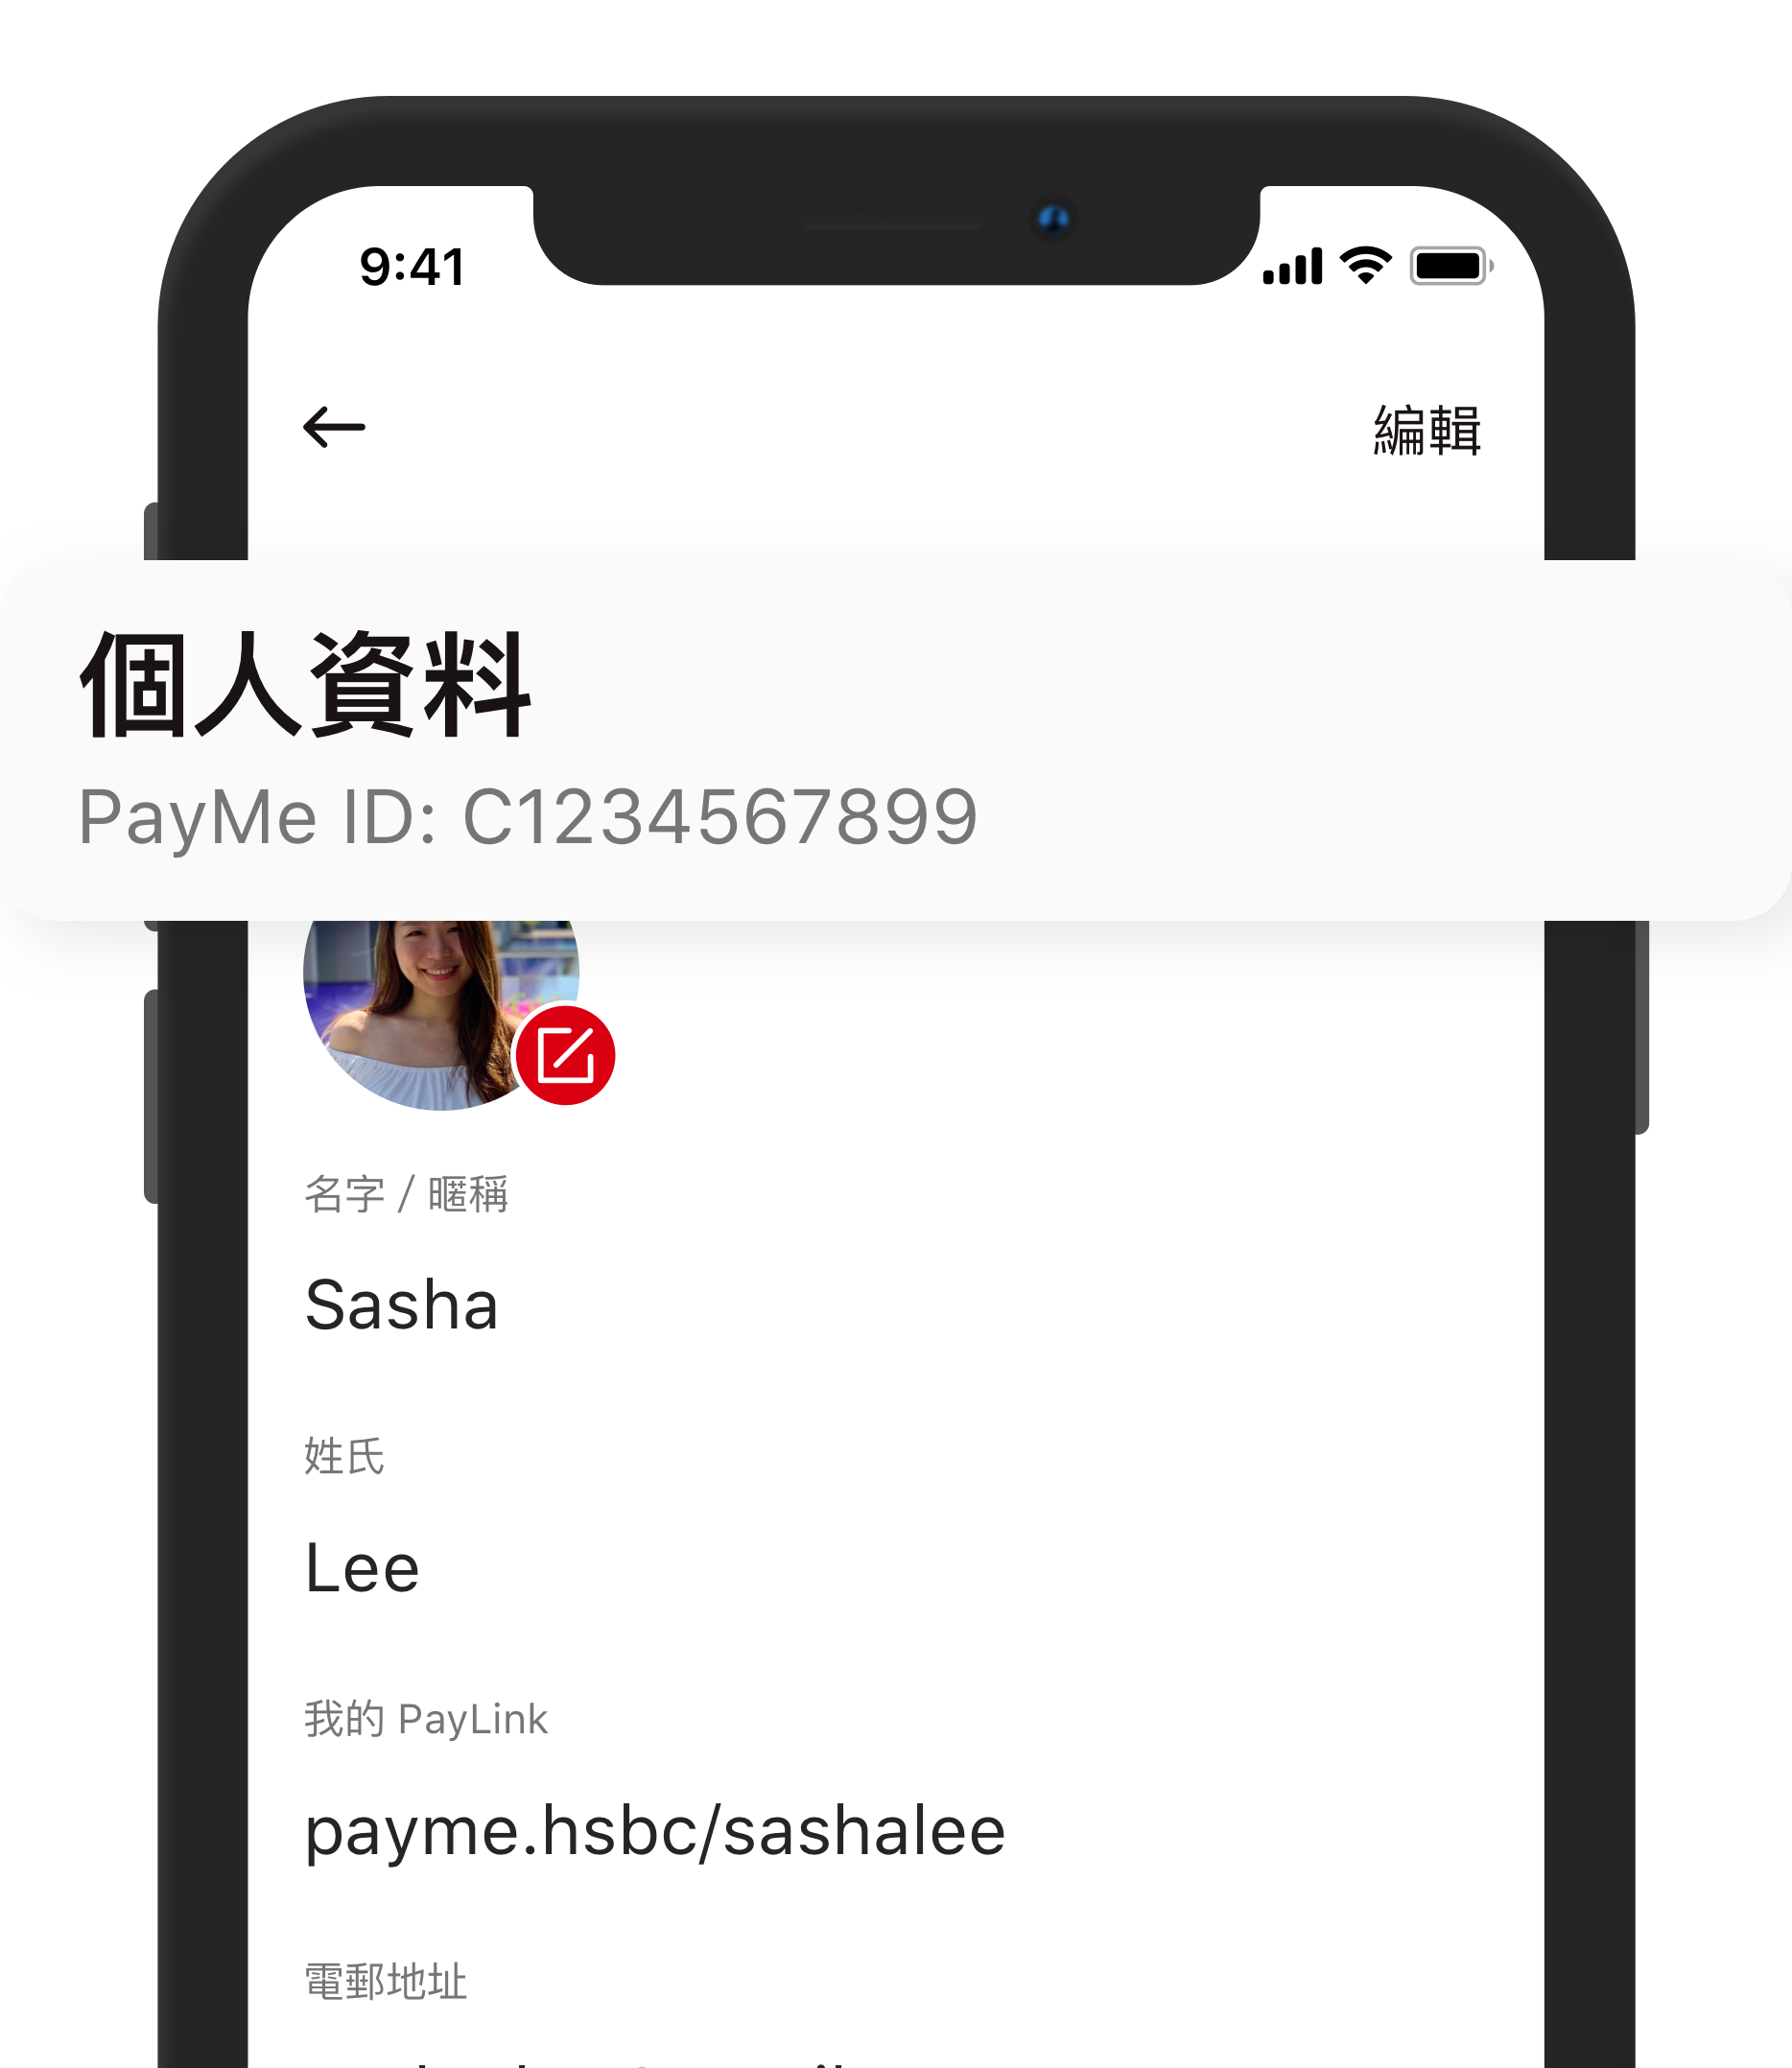 用戶亦可在個人檔案內查看其帳戶的相關號碼（即是用戶的 PayMe ID）